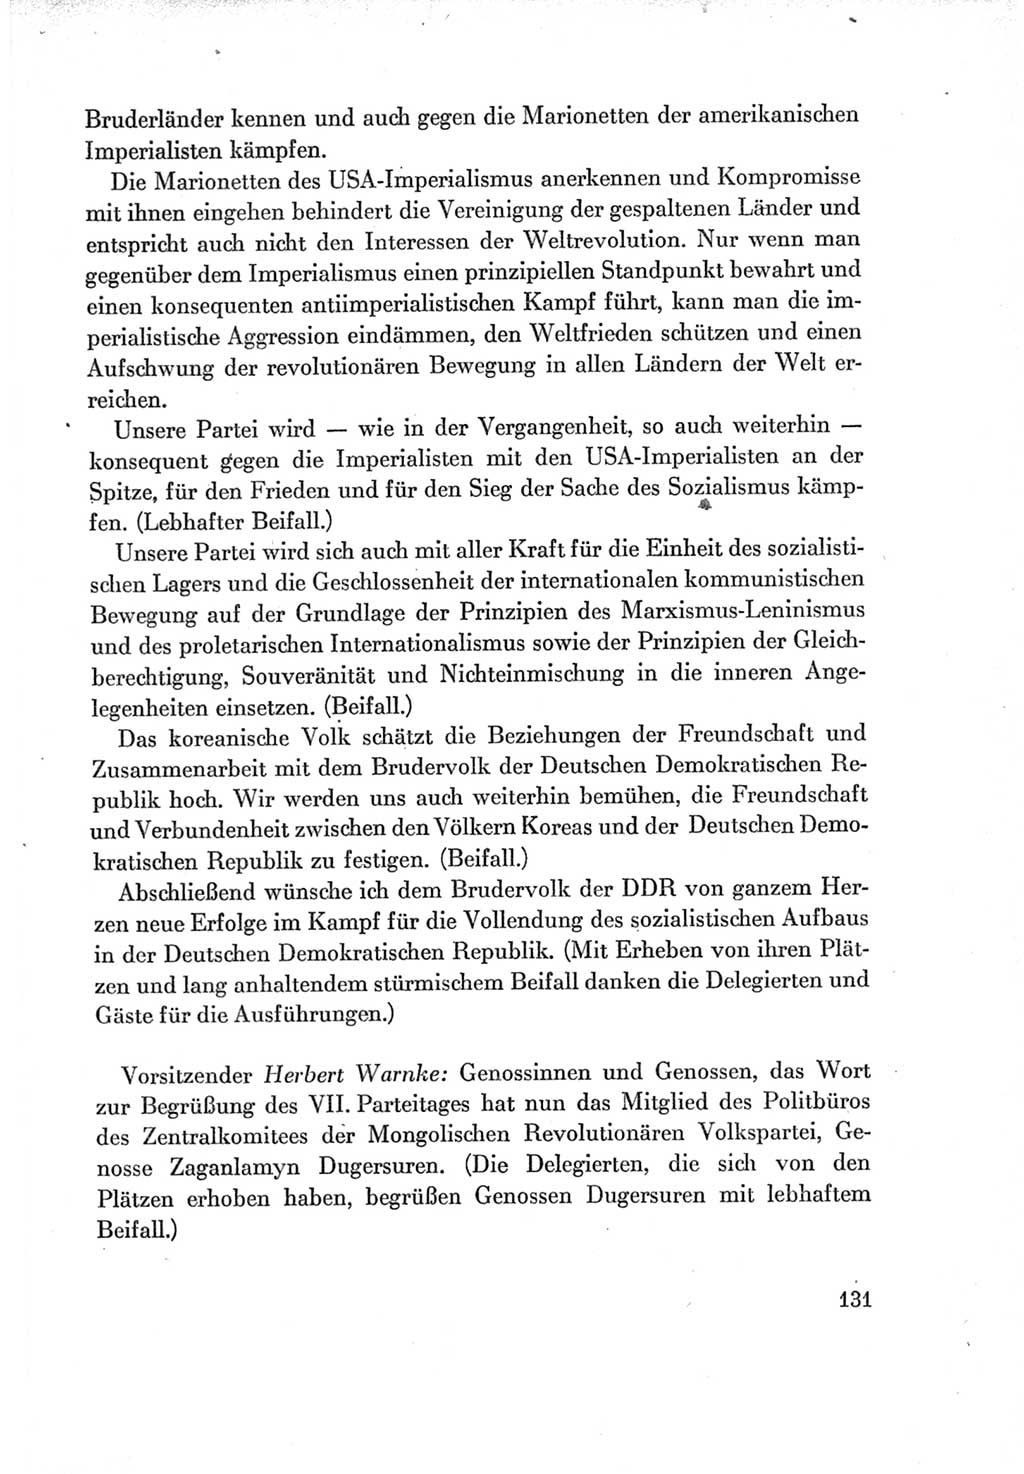 Protokoll der Verhandlungen des Ⅶ. Parteitages der Sozialistischen Einheitspartei Deutschlands (SED) [Deutsche Demokratische Republik (DDR)] 1967, Band Ⅱ, Seite 131 (Prot. Verh. Ⅶ. PT SED DDR 1967, Bd. Ⅱ, S. 131)